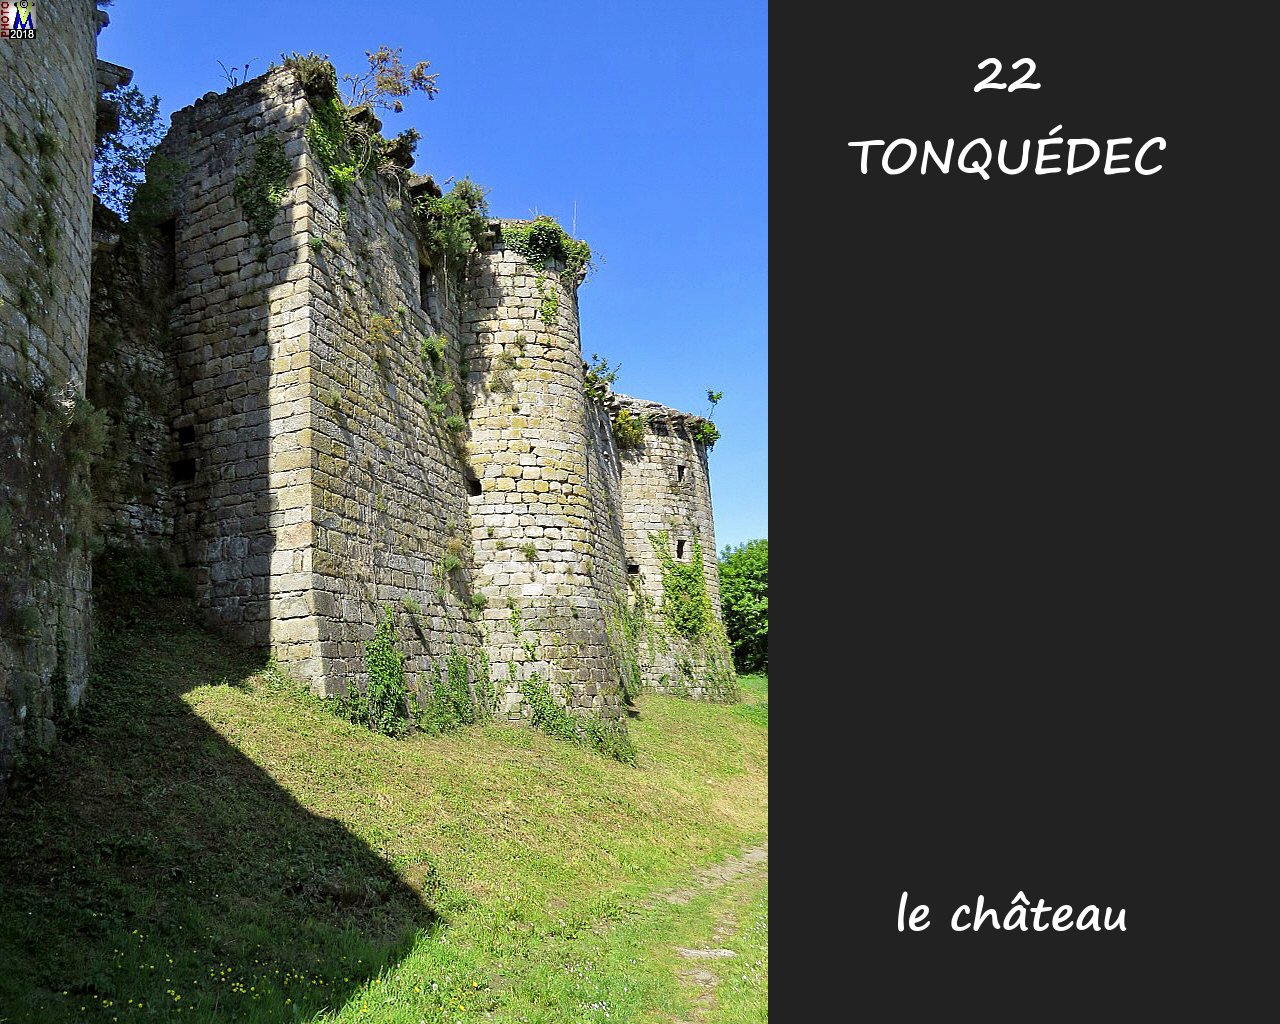 22TONQUEDEC_chateau_122.jpg